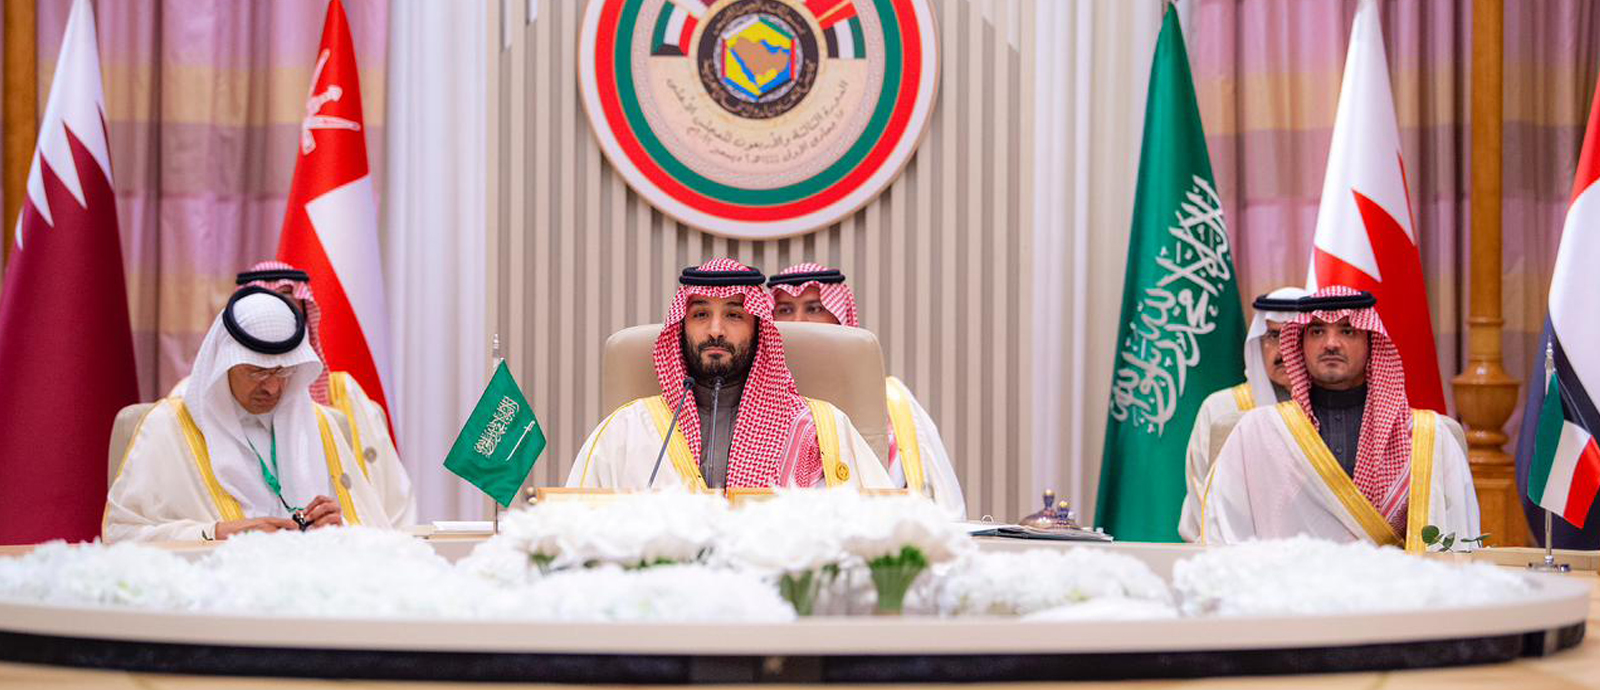 ولي العهد السعودي يهنئ سمو الأمير بالنجاح المتميز في استضافة المونديال